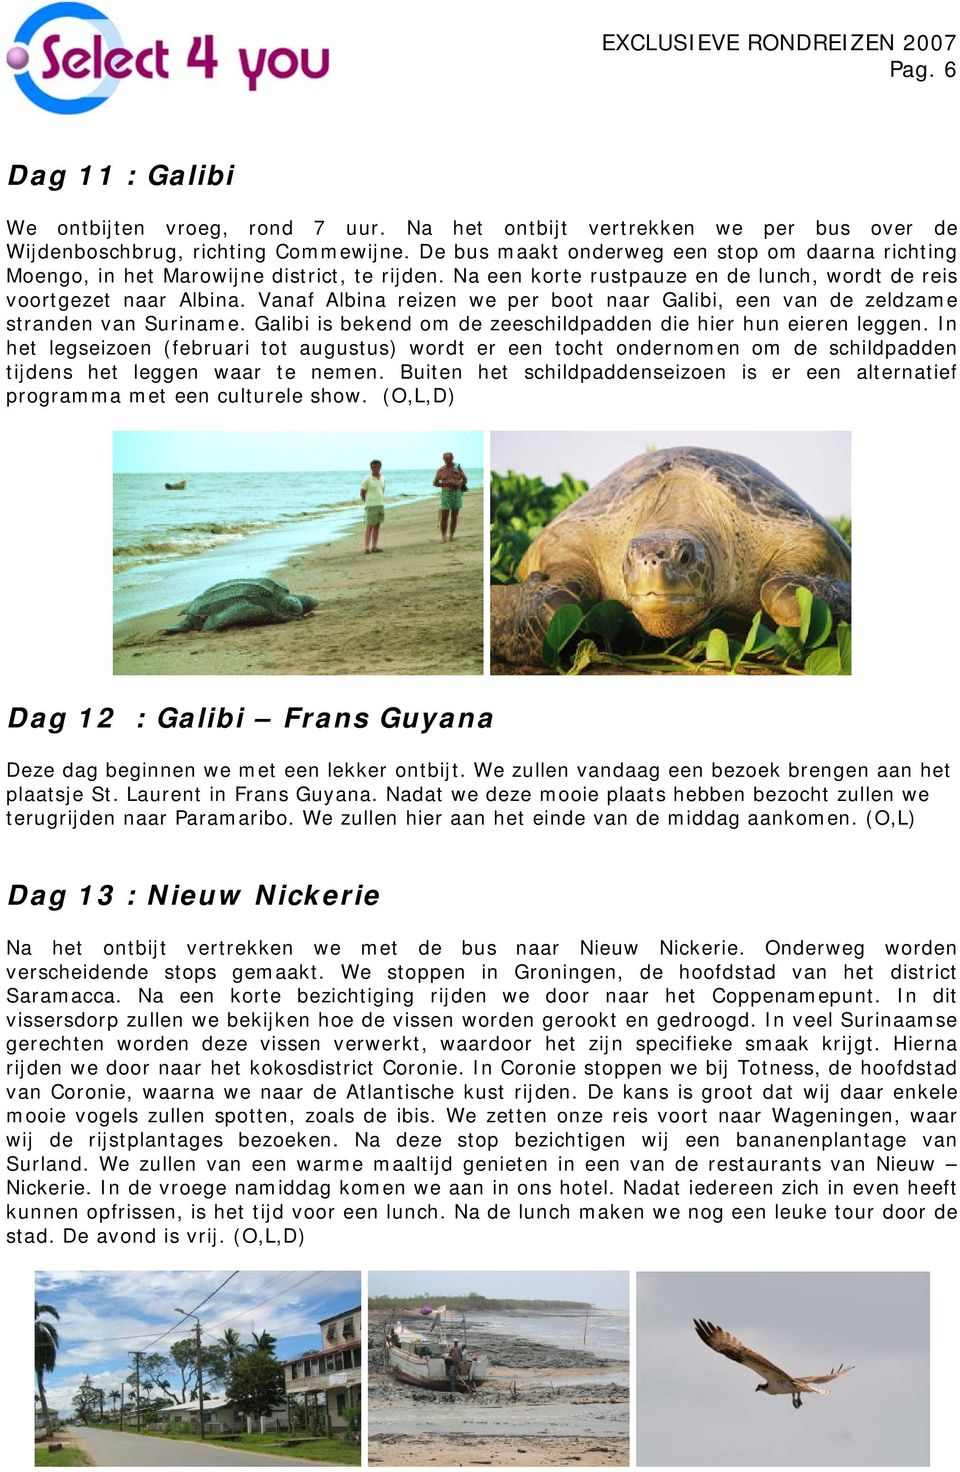 Vanaf Albina reizen we per boot naar Galibi, een van de zeldzame stranden van Suriname. Galibi is bekend om de zeeschildpadden die hier hun eieren leggen.